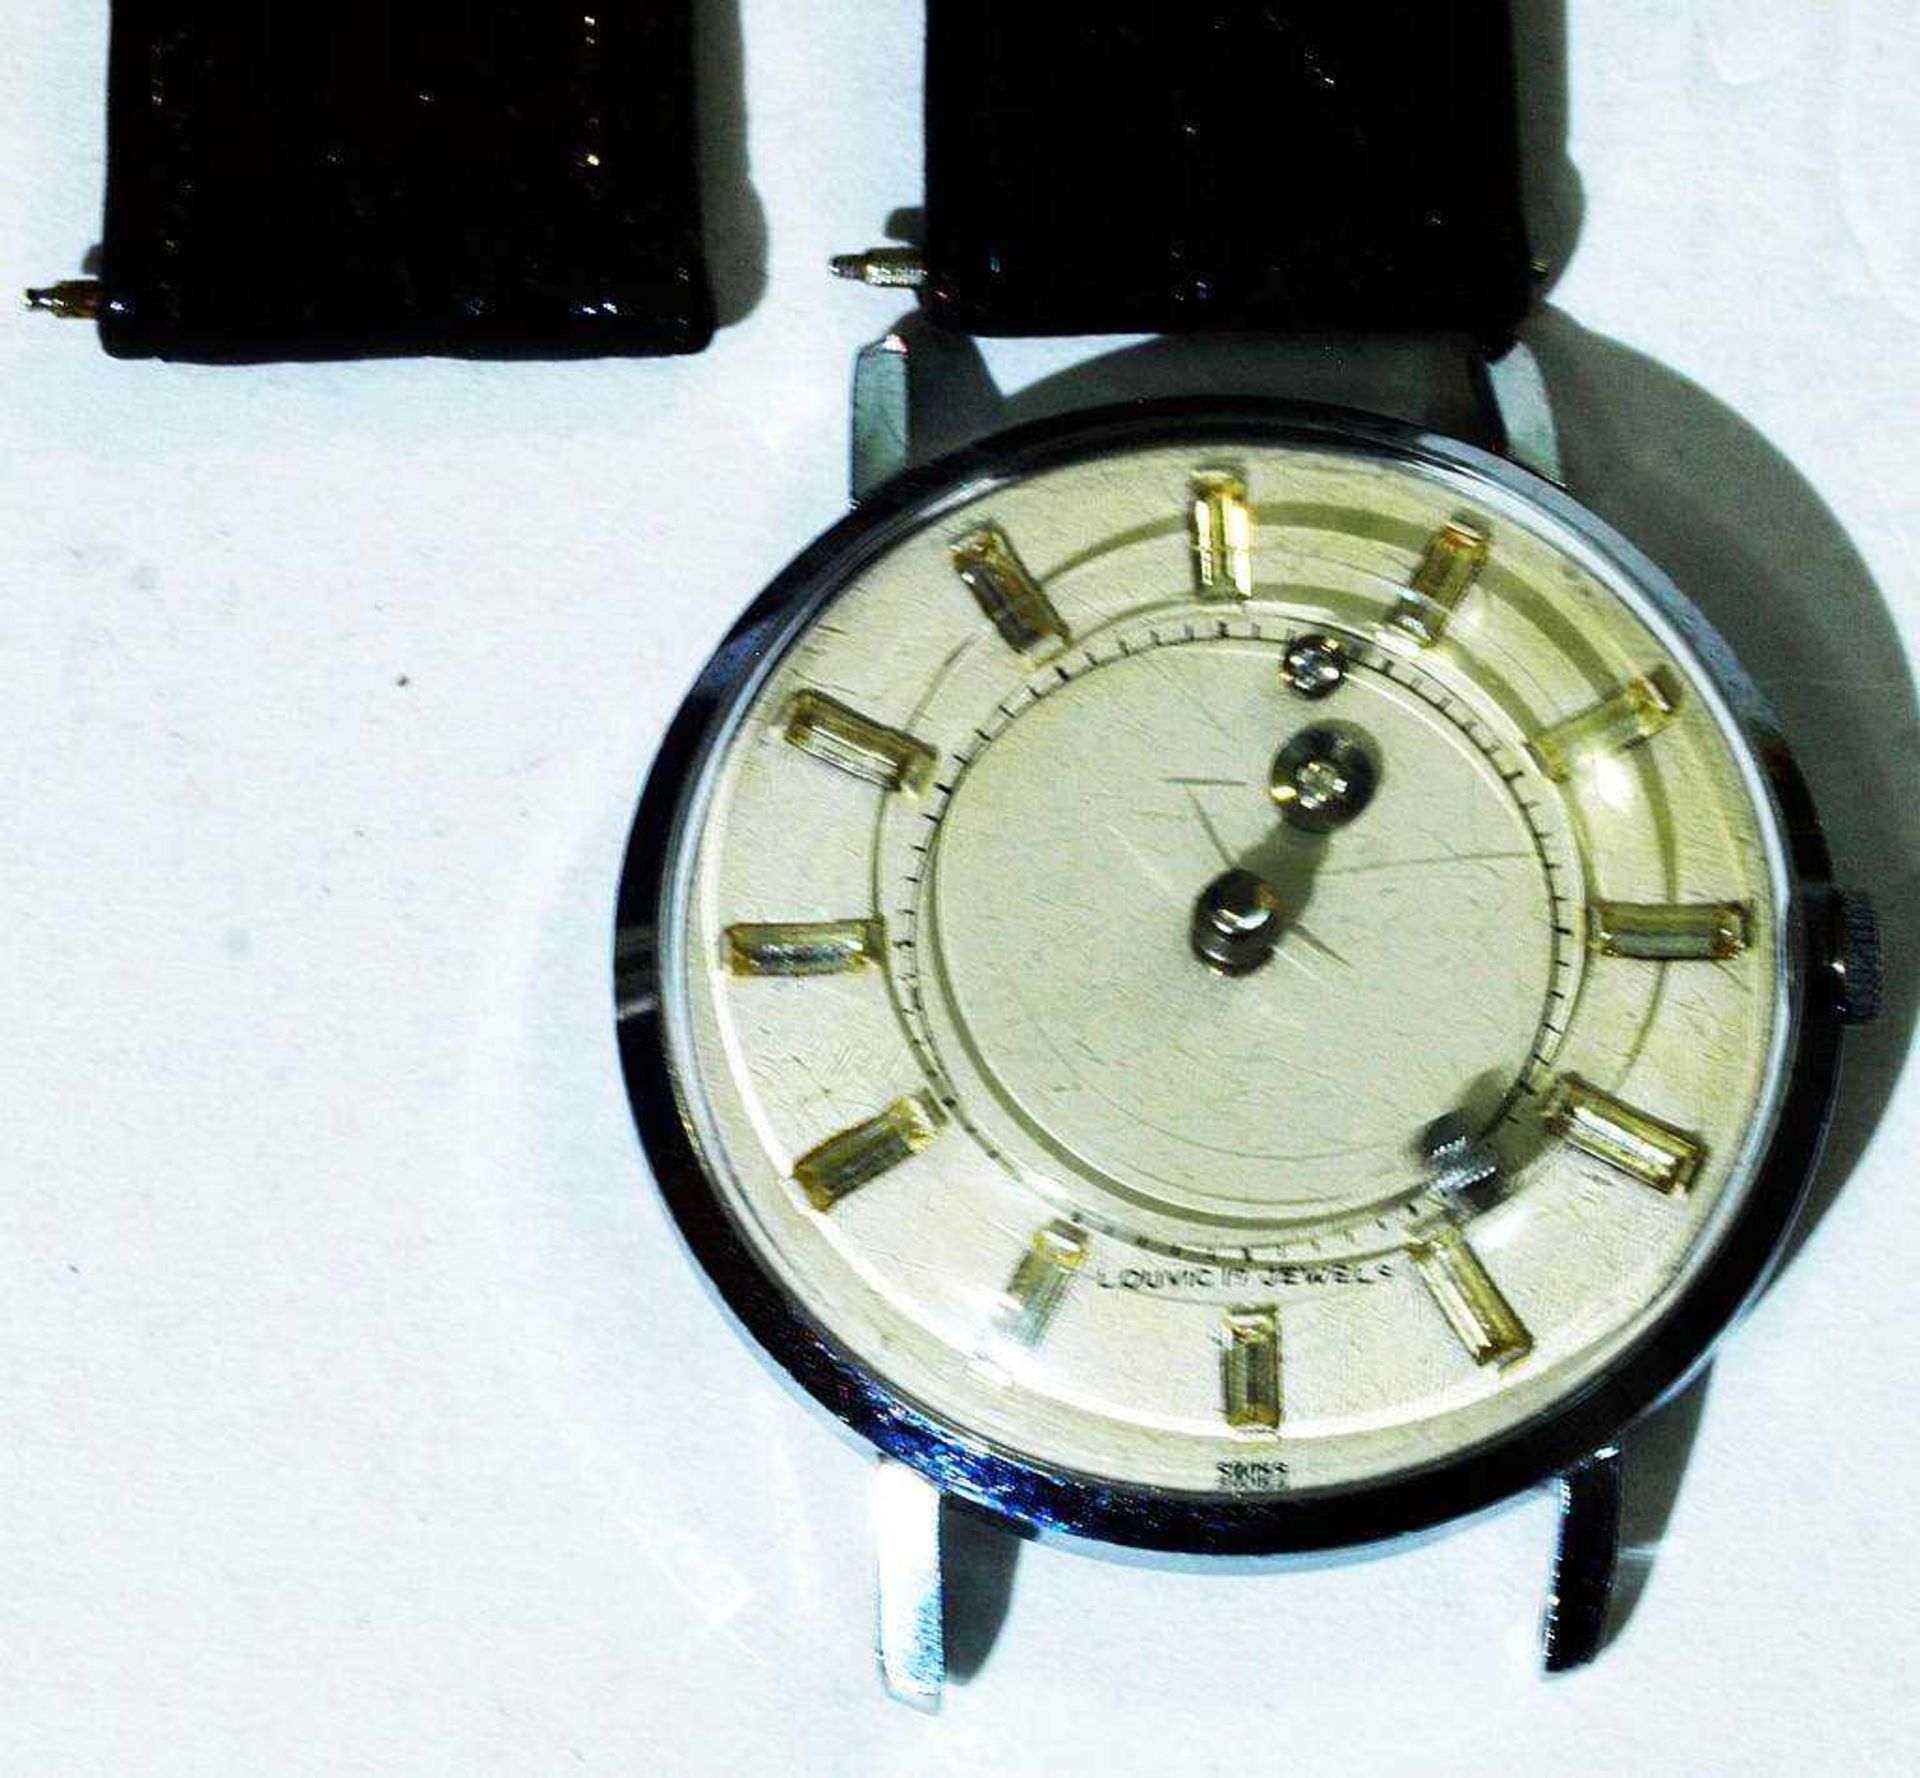 Mystriöse Armbanduhr. Mystriöse Armbanduhr. "Louvic", 17 Steine, Edelstahl, Rundes Gehäuse, kleine - Bild 2 aus 3